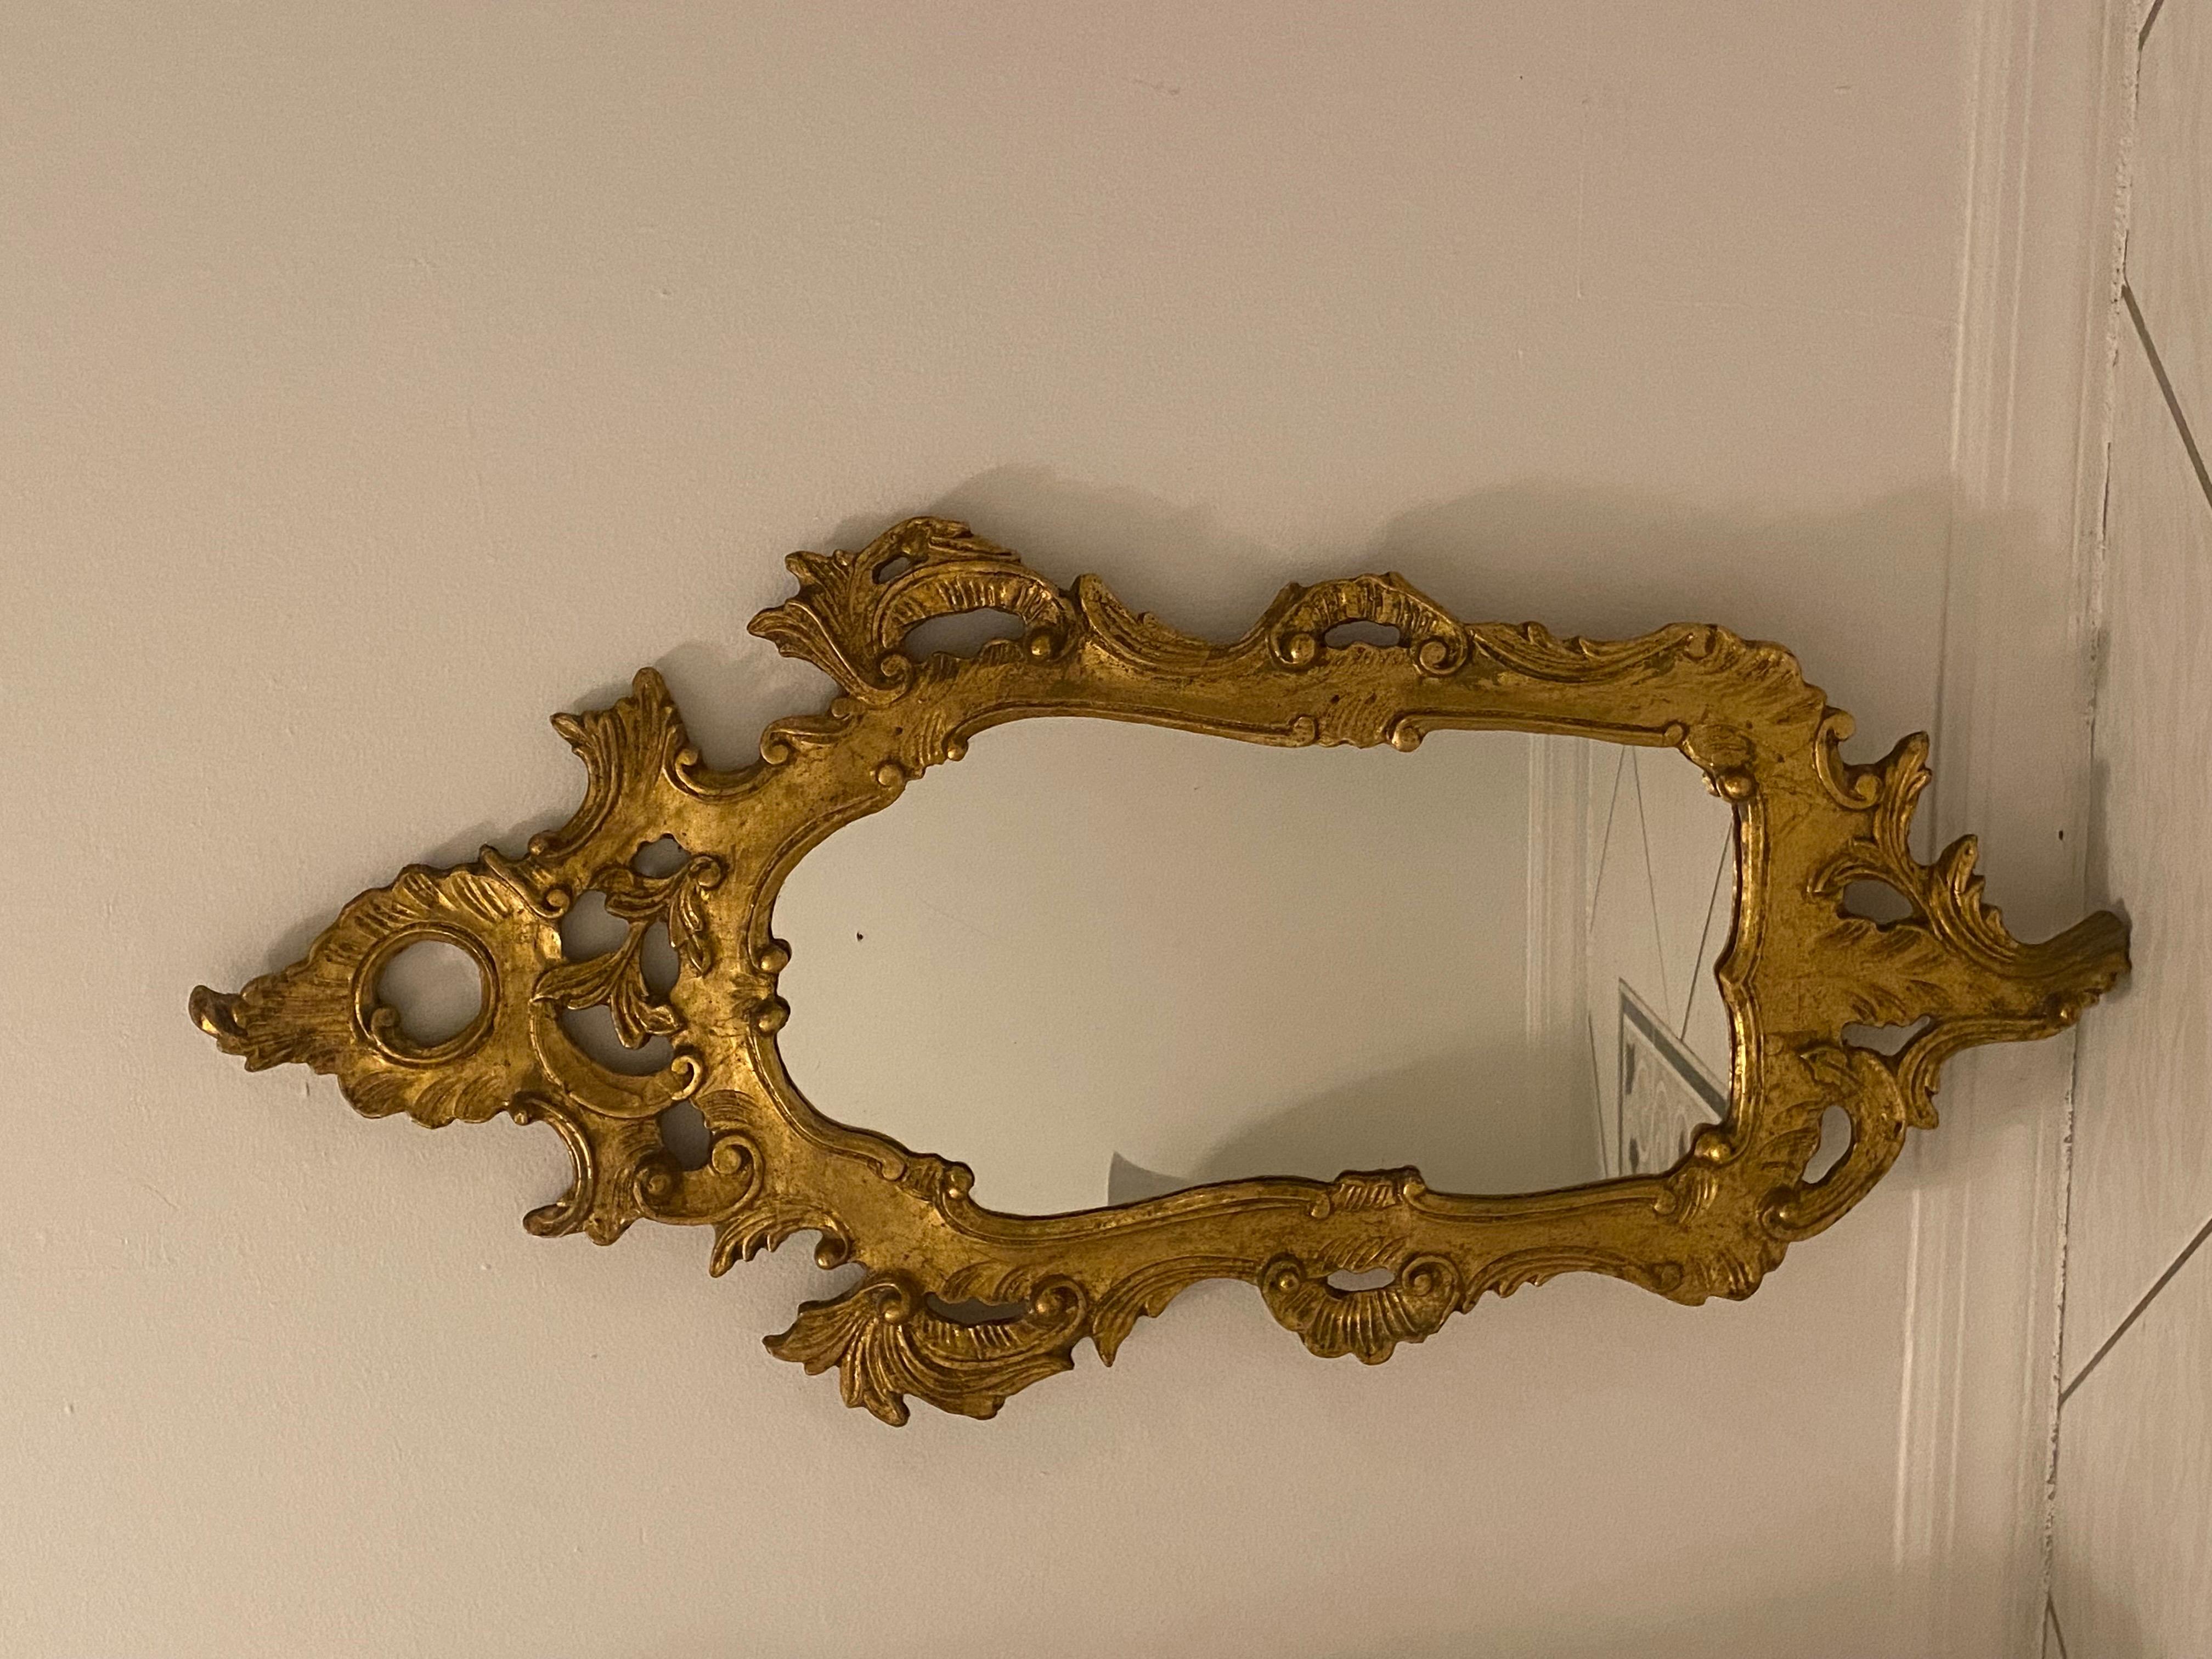 Der prächtige antike Spiegel im Stil des Rokoko ist aus geschnitztem Goldholz mit kunstvollen astförmigen Schnitzereien in C-Form und kreisförmigen Motiven und Schriftrollen gefertigt. 

Das Stück ist in tollem Vintage-Zustand.

Italien, 1950er